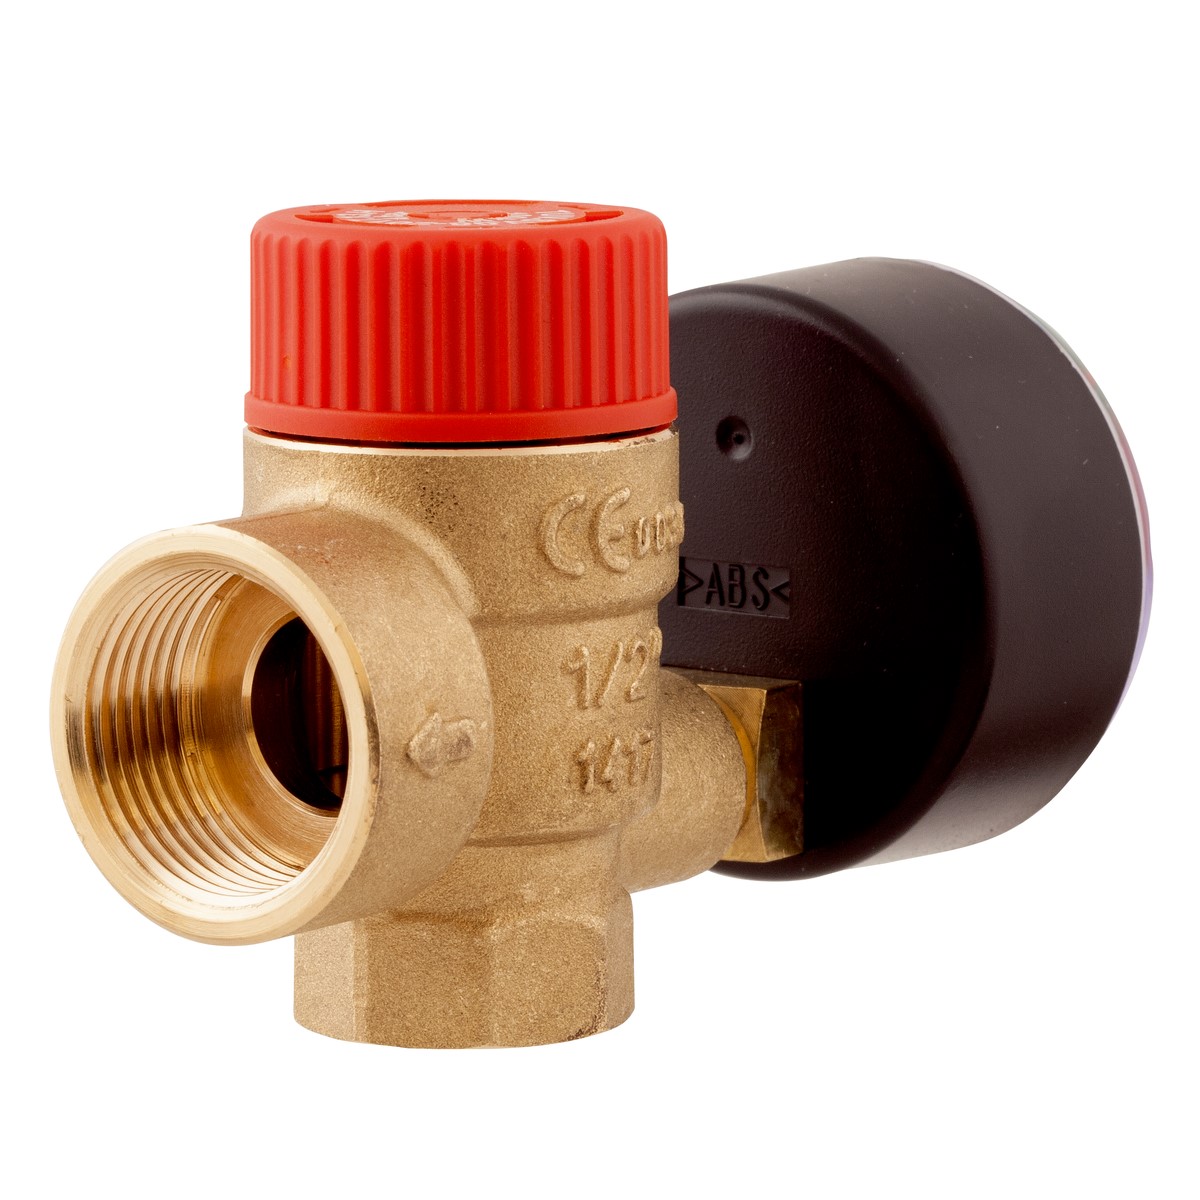 Pojistný ventil pro ústřední topení MS s výstupem pro manometr GW G¼", 1,5 baru, G½" x Rp½" - AFRISO.CZ